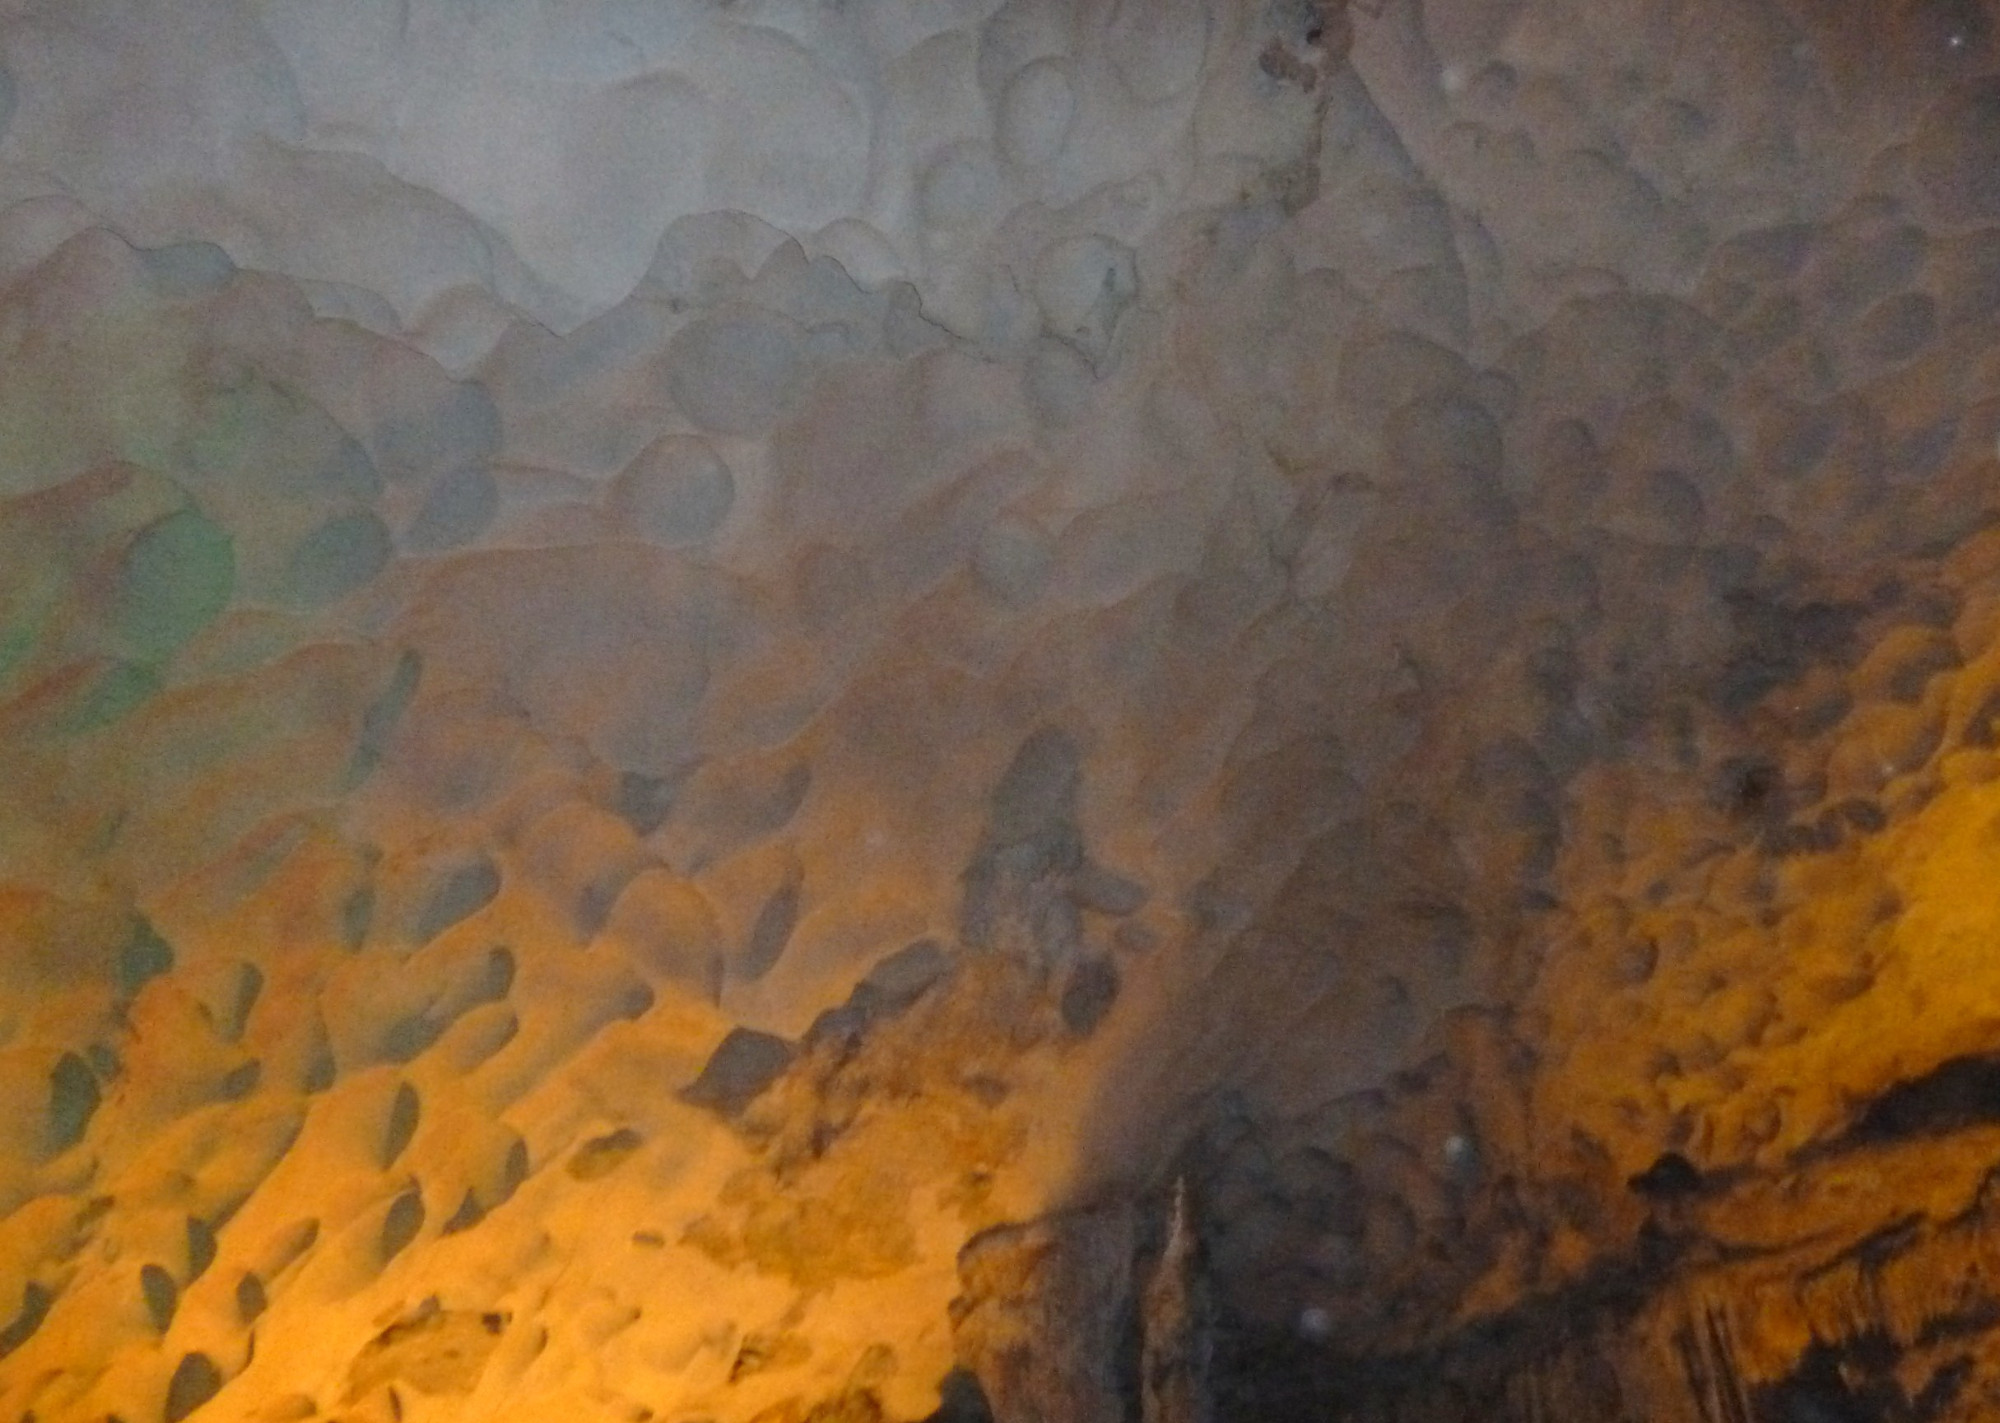 Sung Sot Cave (Suprise Cave), Vietnam